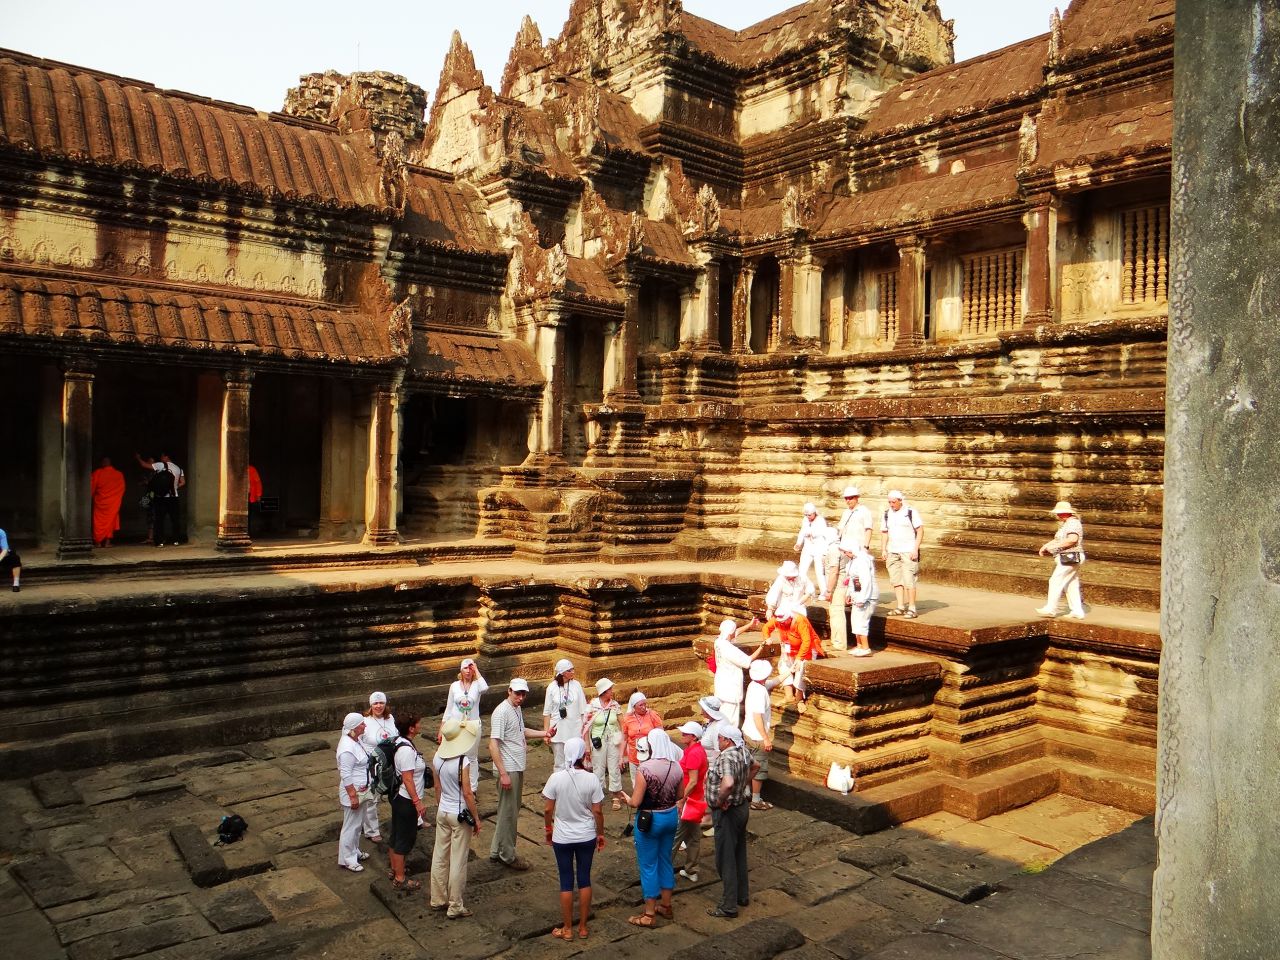 По четырем сторонам света от центральной башни Ангкор Вата расположены 4 ритуальных водоема. В сезон дождей они набираются водой, стекающей с крыш башень по специально предусмотренным желобам. Несколько раз в год здесь проводили службы и ритуалы исцеления страждущих. - Камбоджа, Лаос. Февраль 2014. Часть 2. Ангкор.